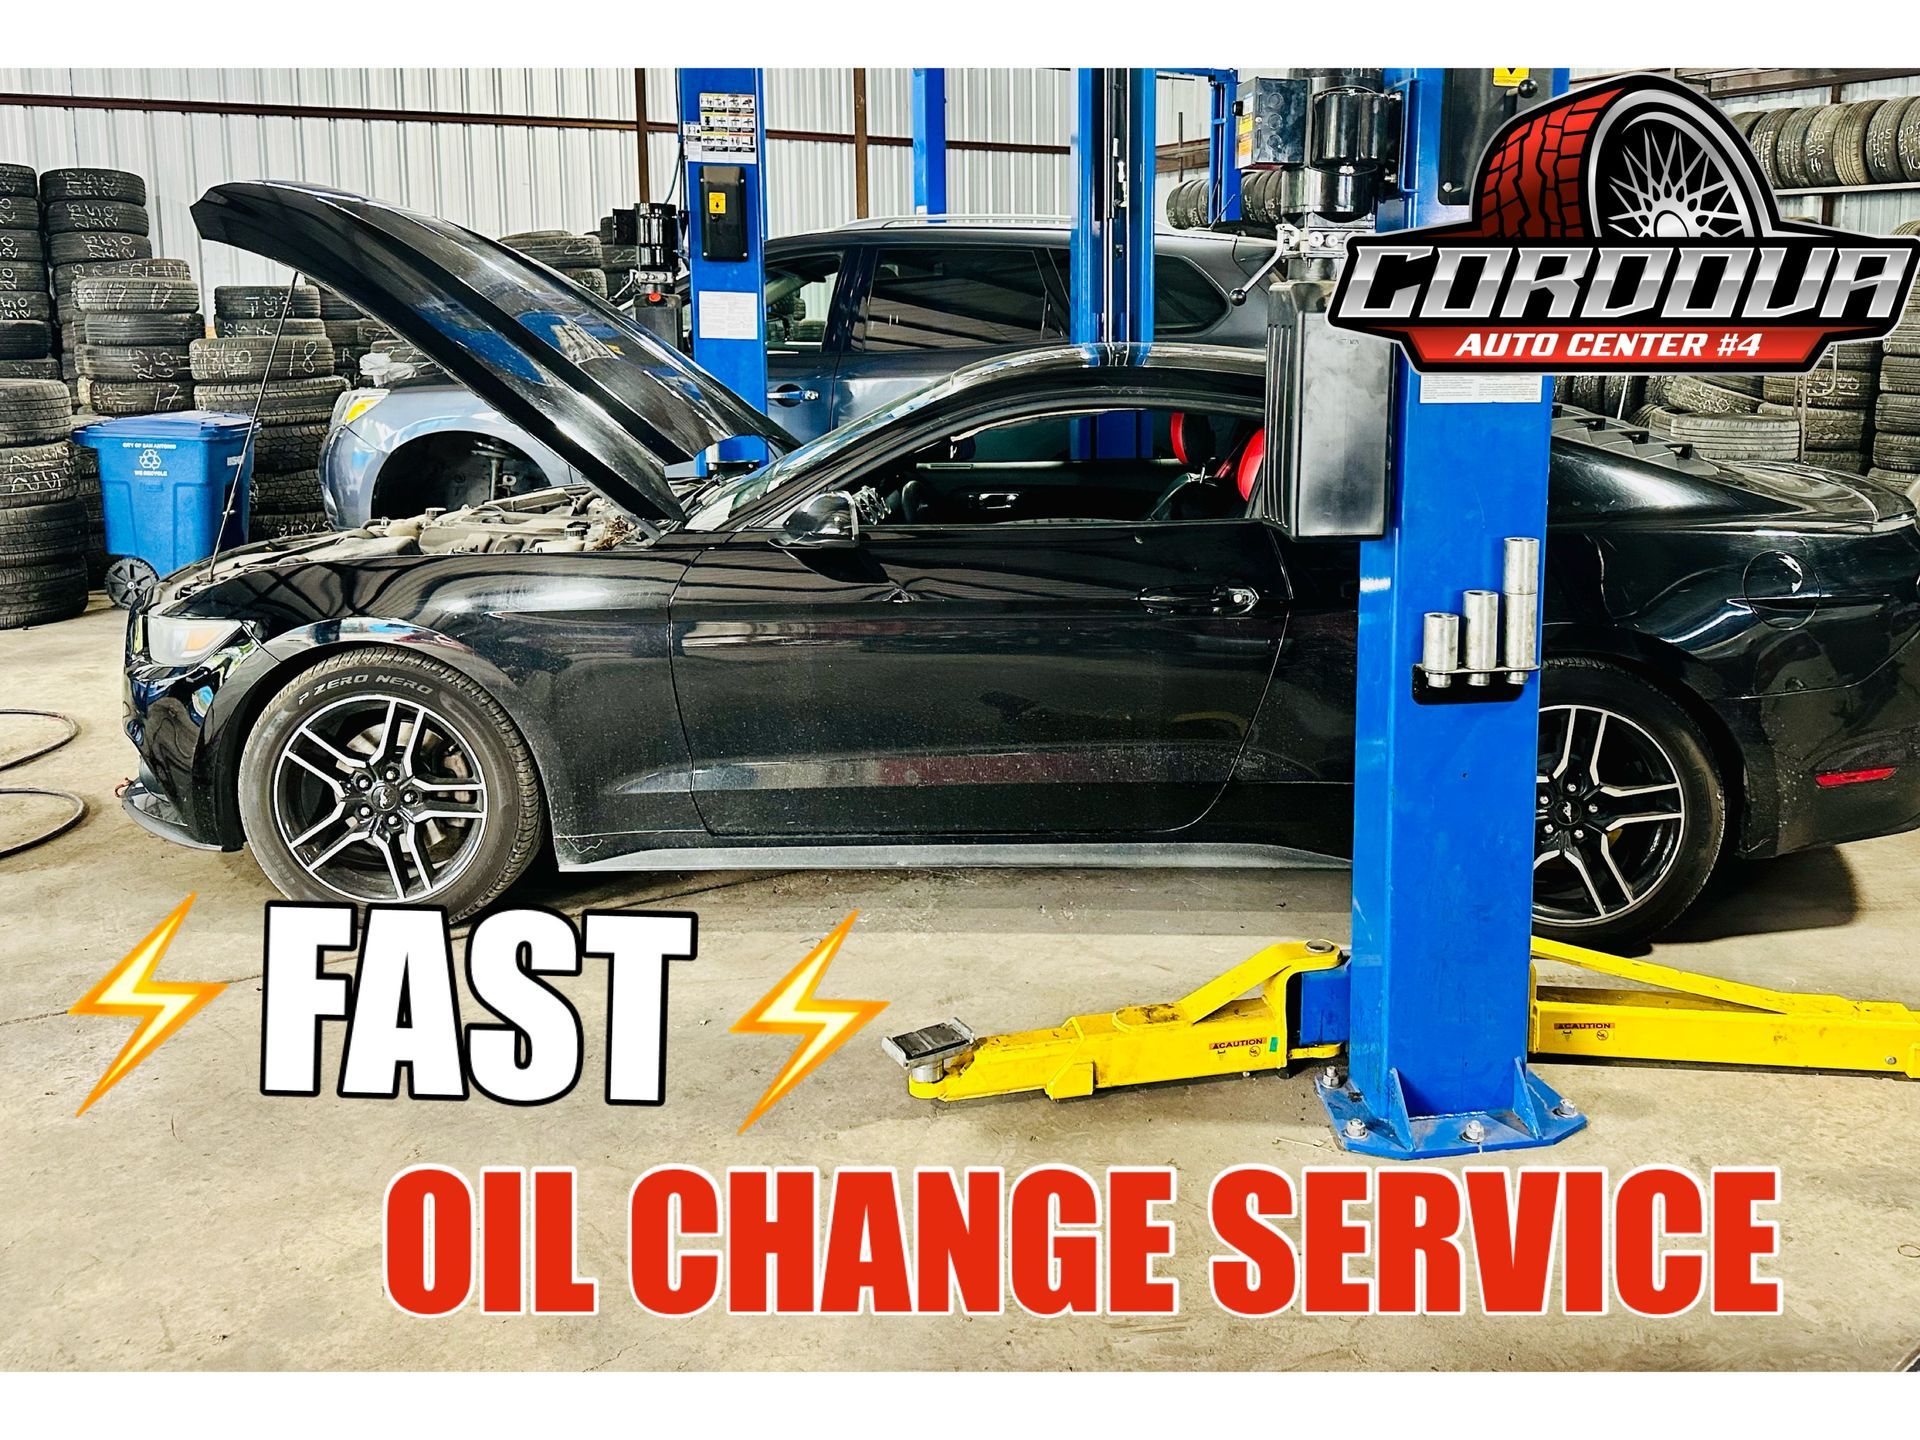 Fast Oil Change Service | Cordova Auto Center #4